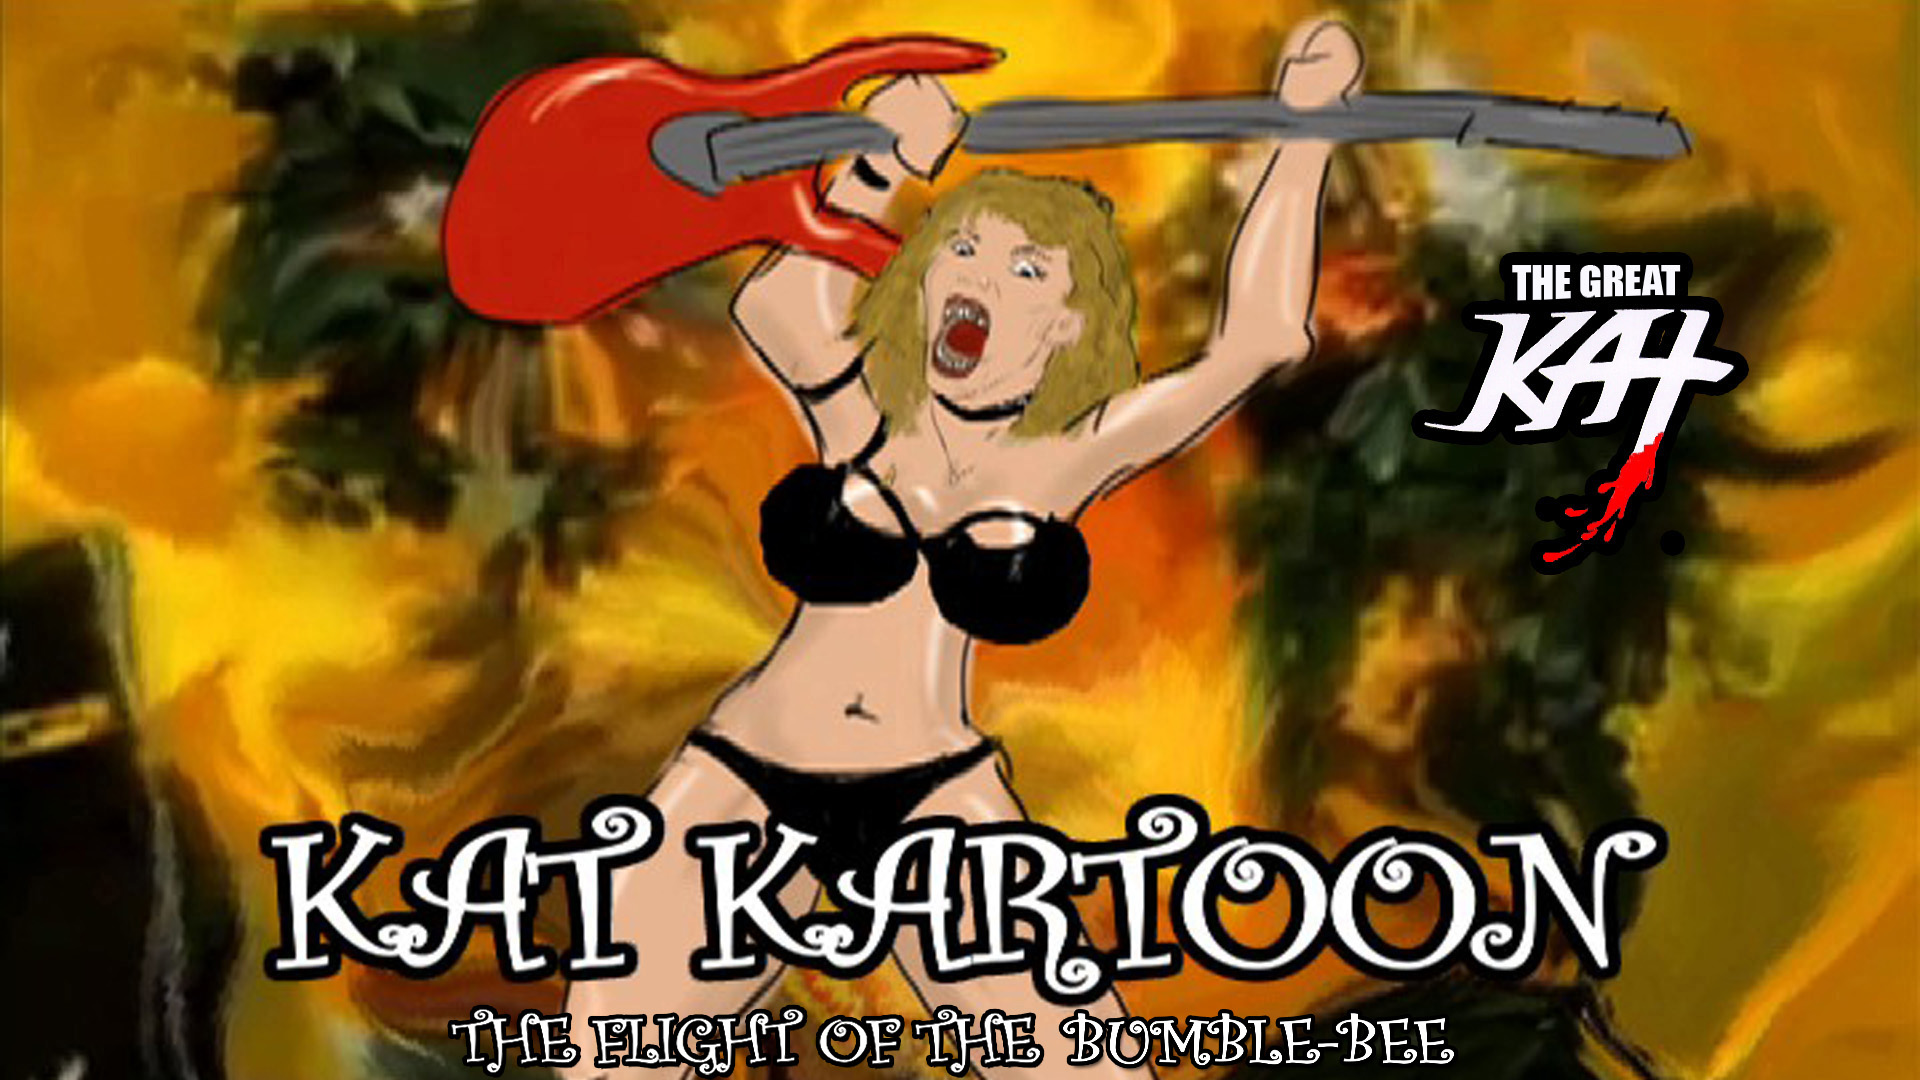 The Great KAT "KAT KARTOON"!